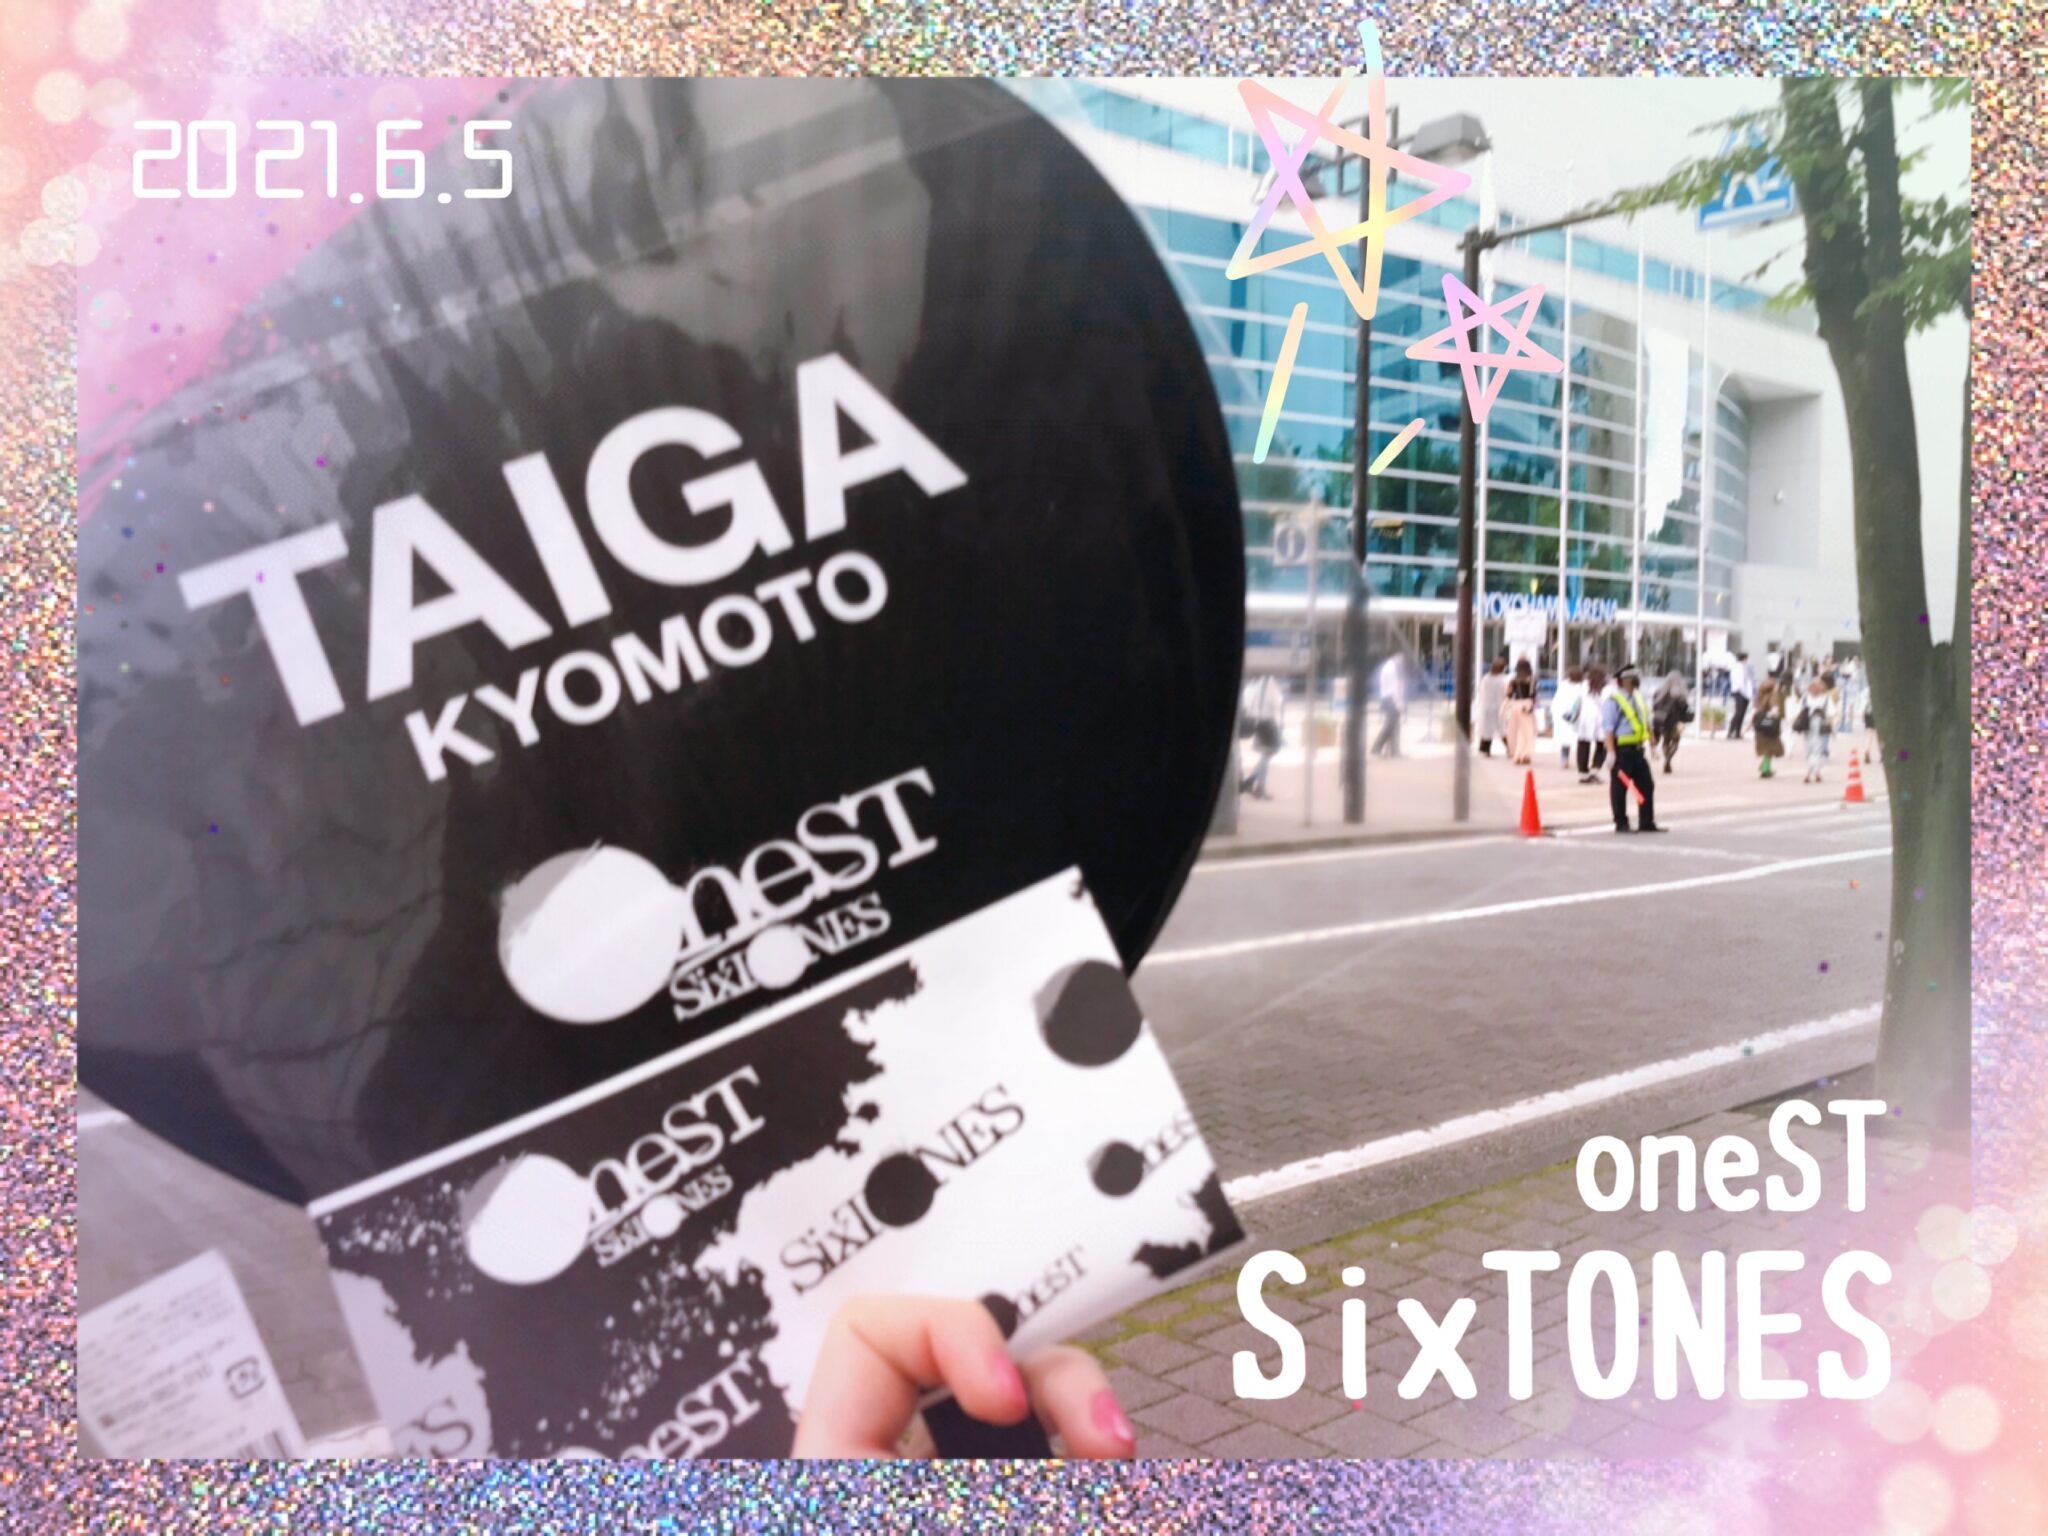 【SixTONES oneST】横浜アリーナ6/5昼夜公演のライブに行った感想 - こじらせ たぴ ライフ